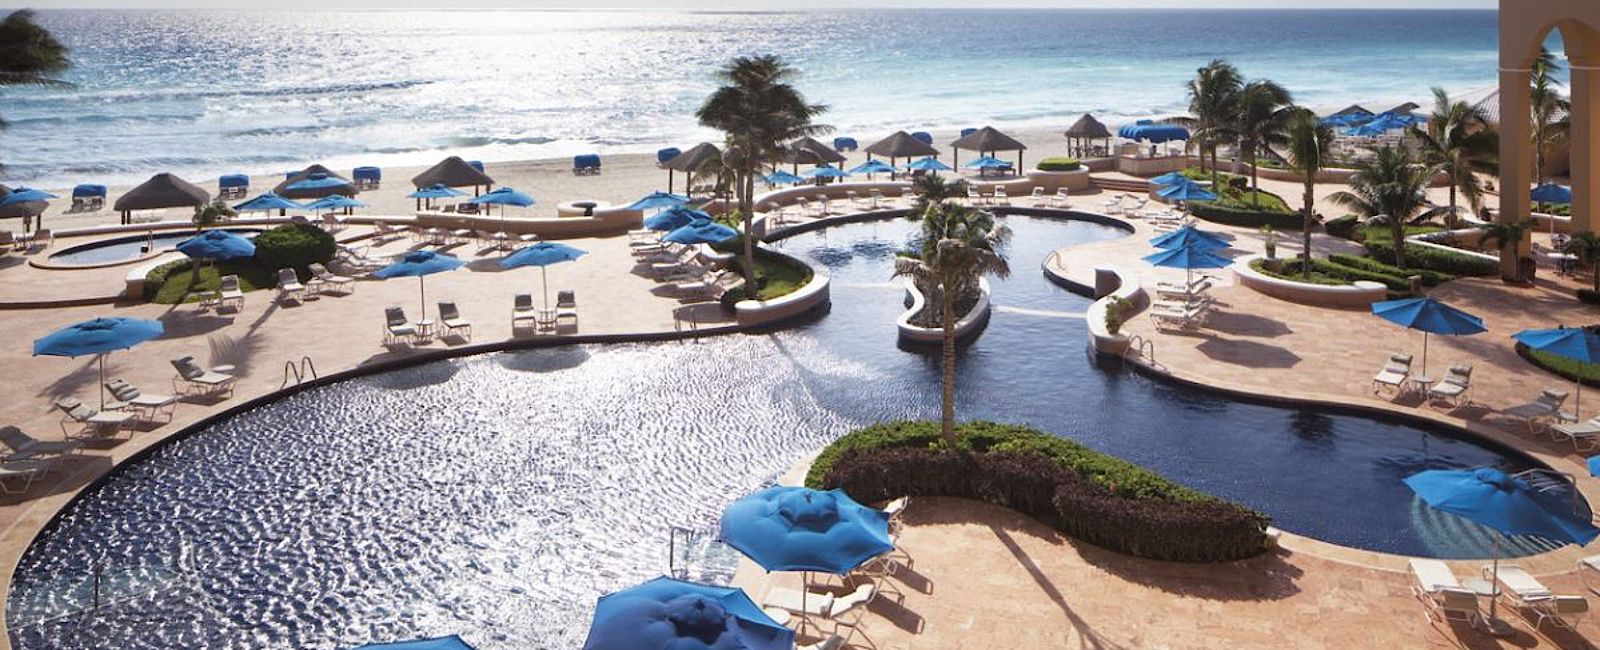 HOTELTEST
 The Ritz-Carlton, Cancun 
 Luxus und relaxen auf amerikanische Art 